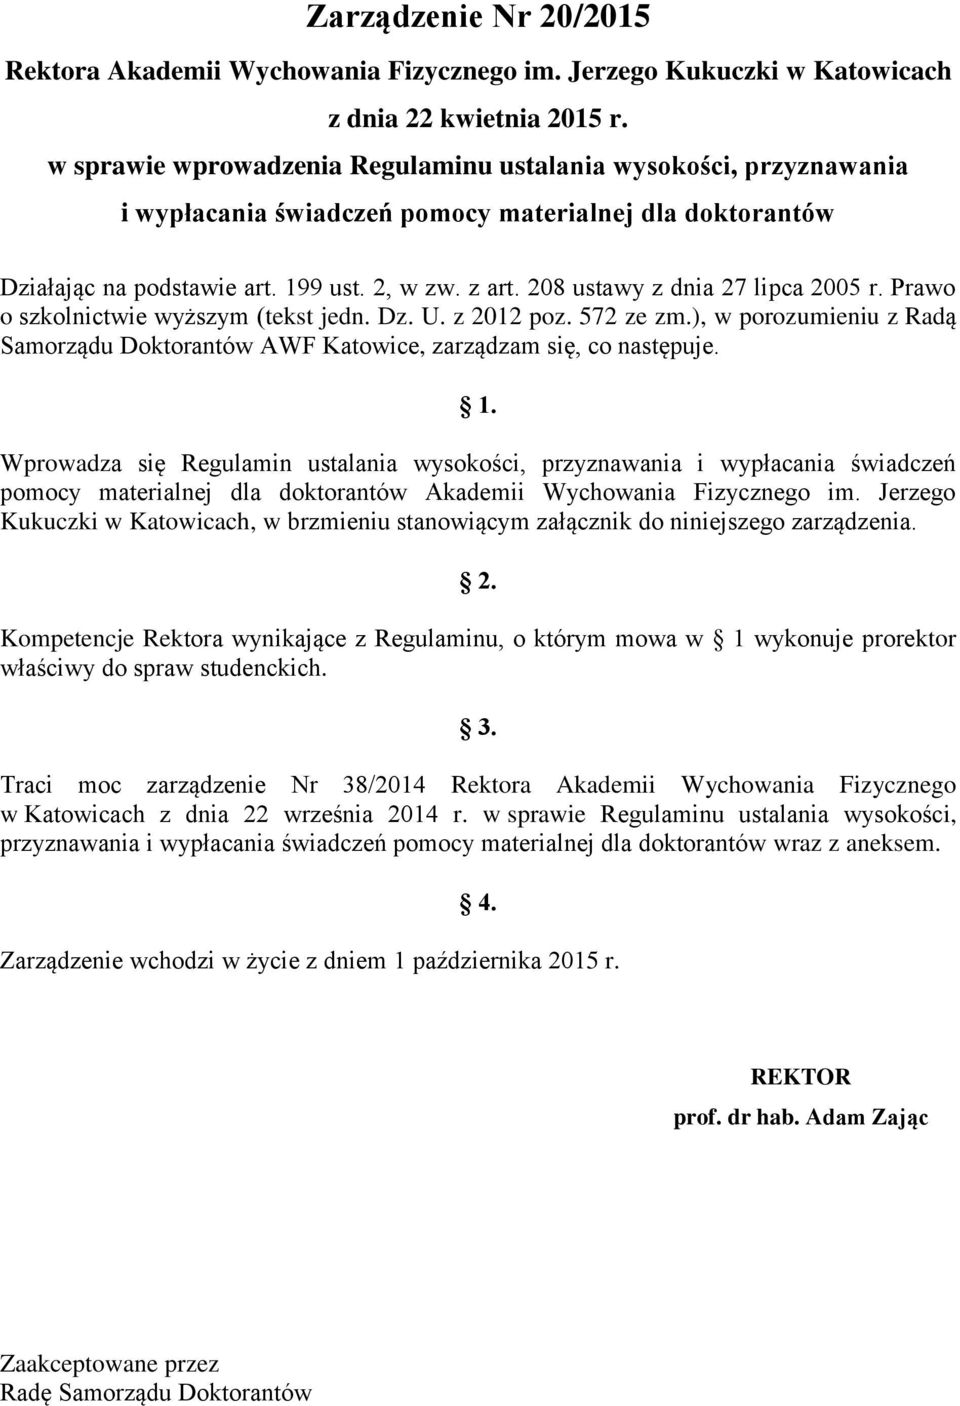 208 ustawy z dnia 27 lipca 2005 r. Prawo o szkolnictwie wyższym (tekst jedn. Dz. U. z 2012 poz. 572 ze zm.), w porozumieniu z Radą Samorządu Doktorantów AWF Katowice, zarządzam się, co następuje. 1.